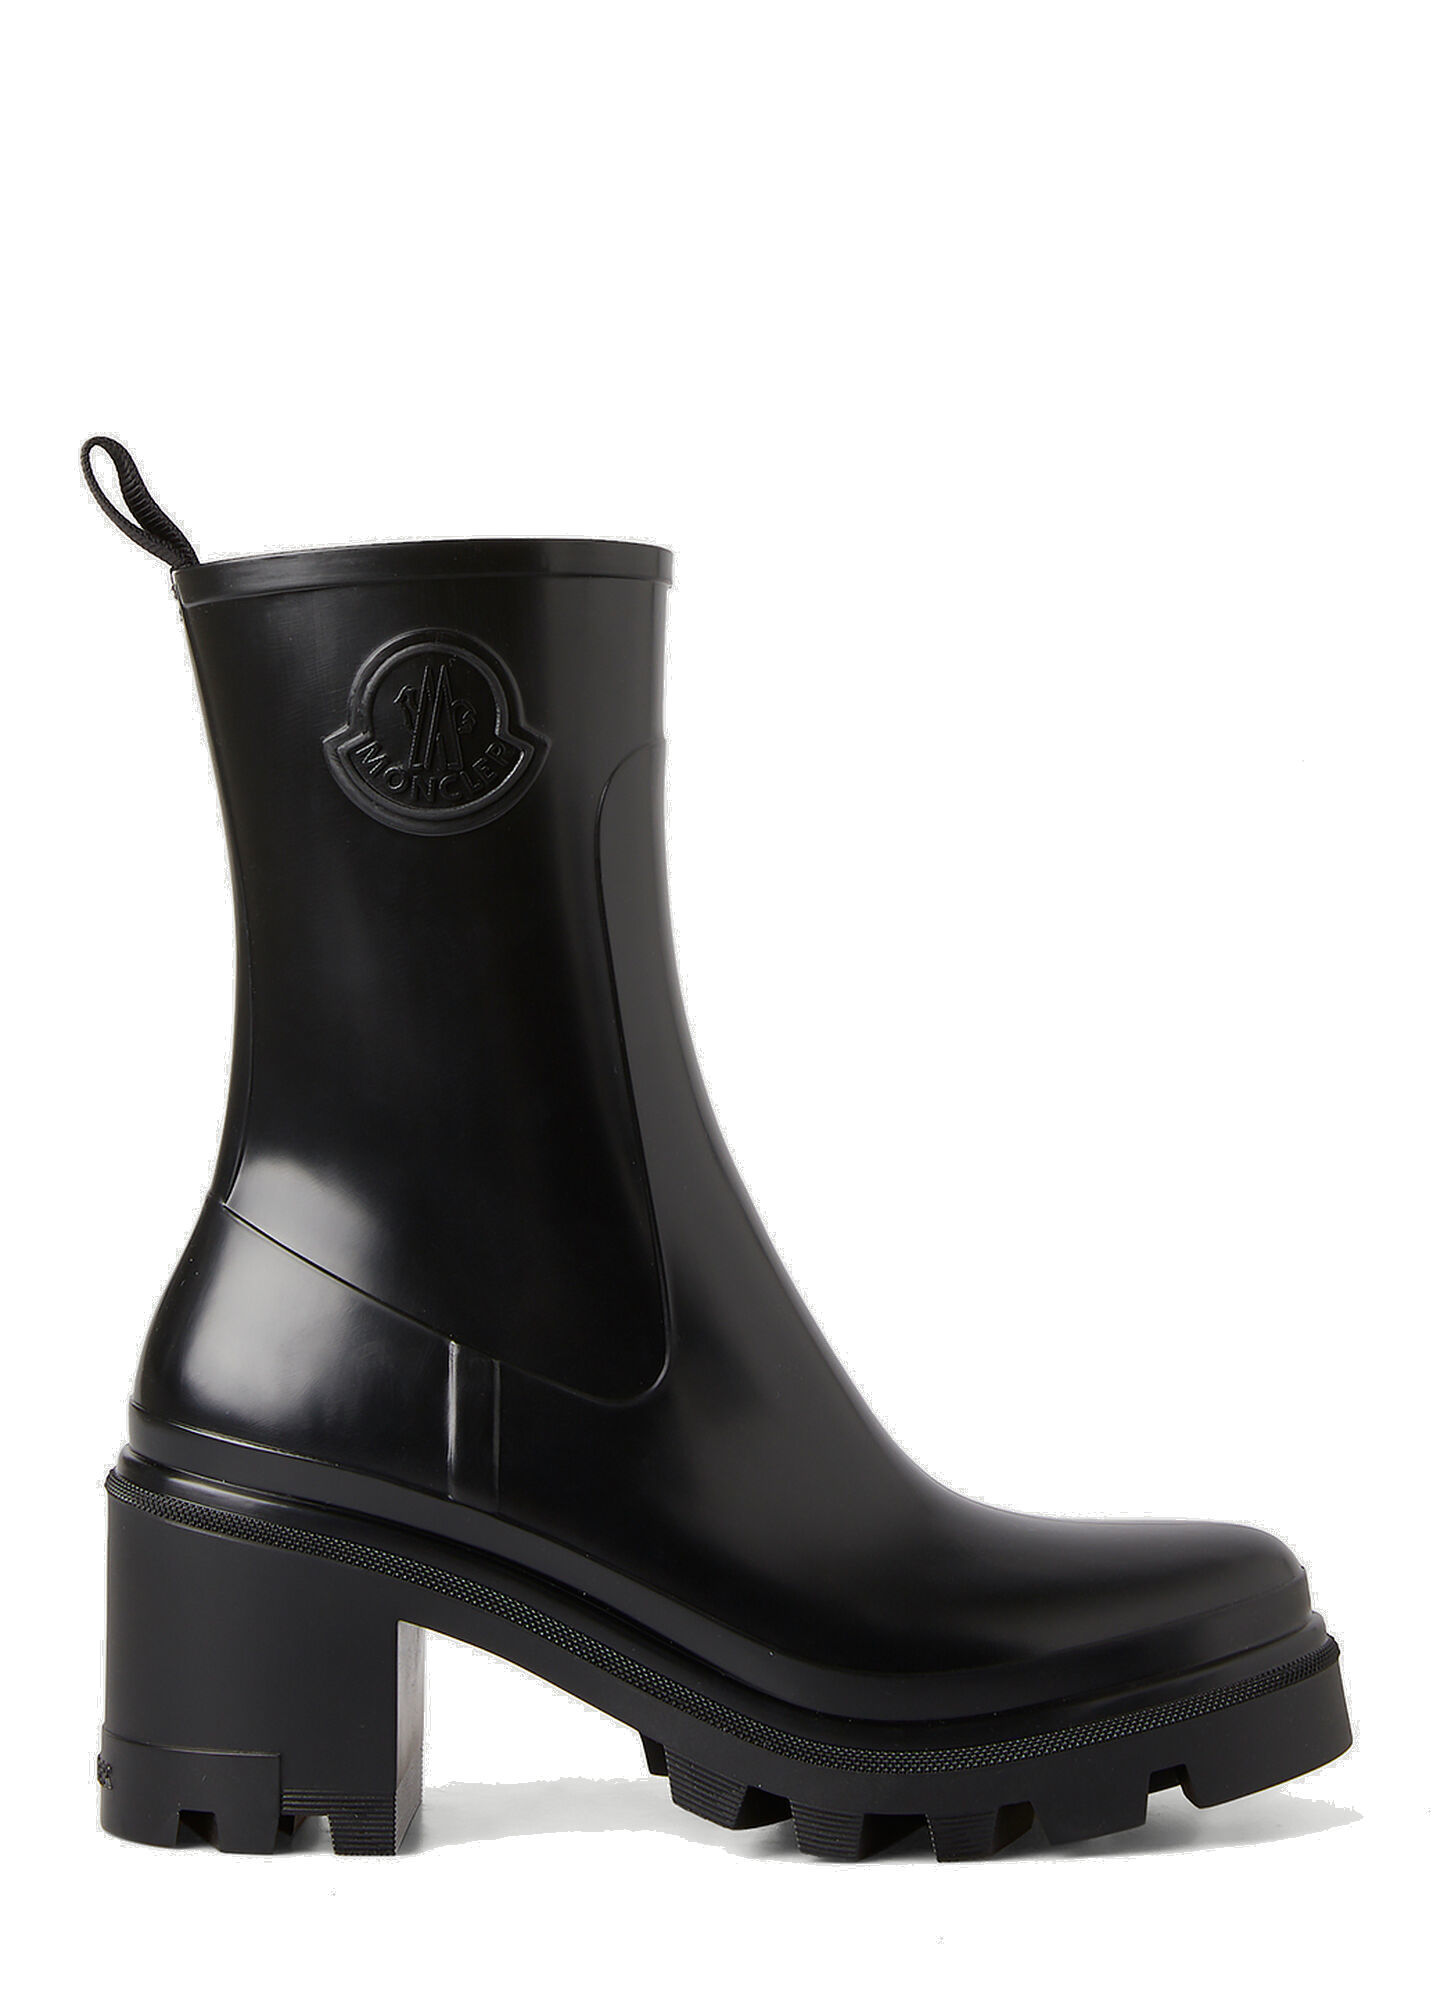 Loft Grip Rain Boots in Black Moncler